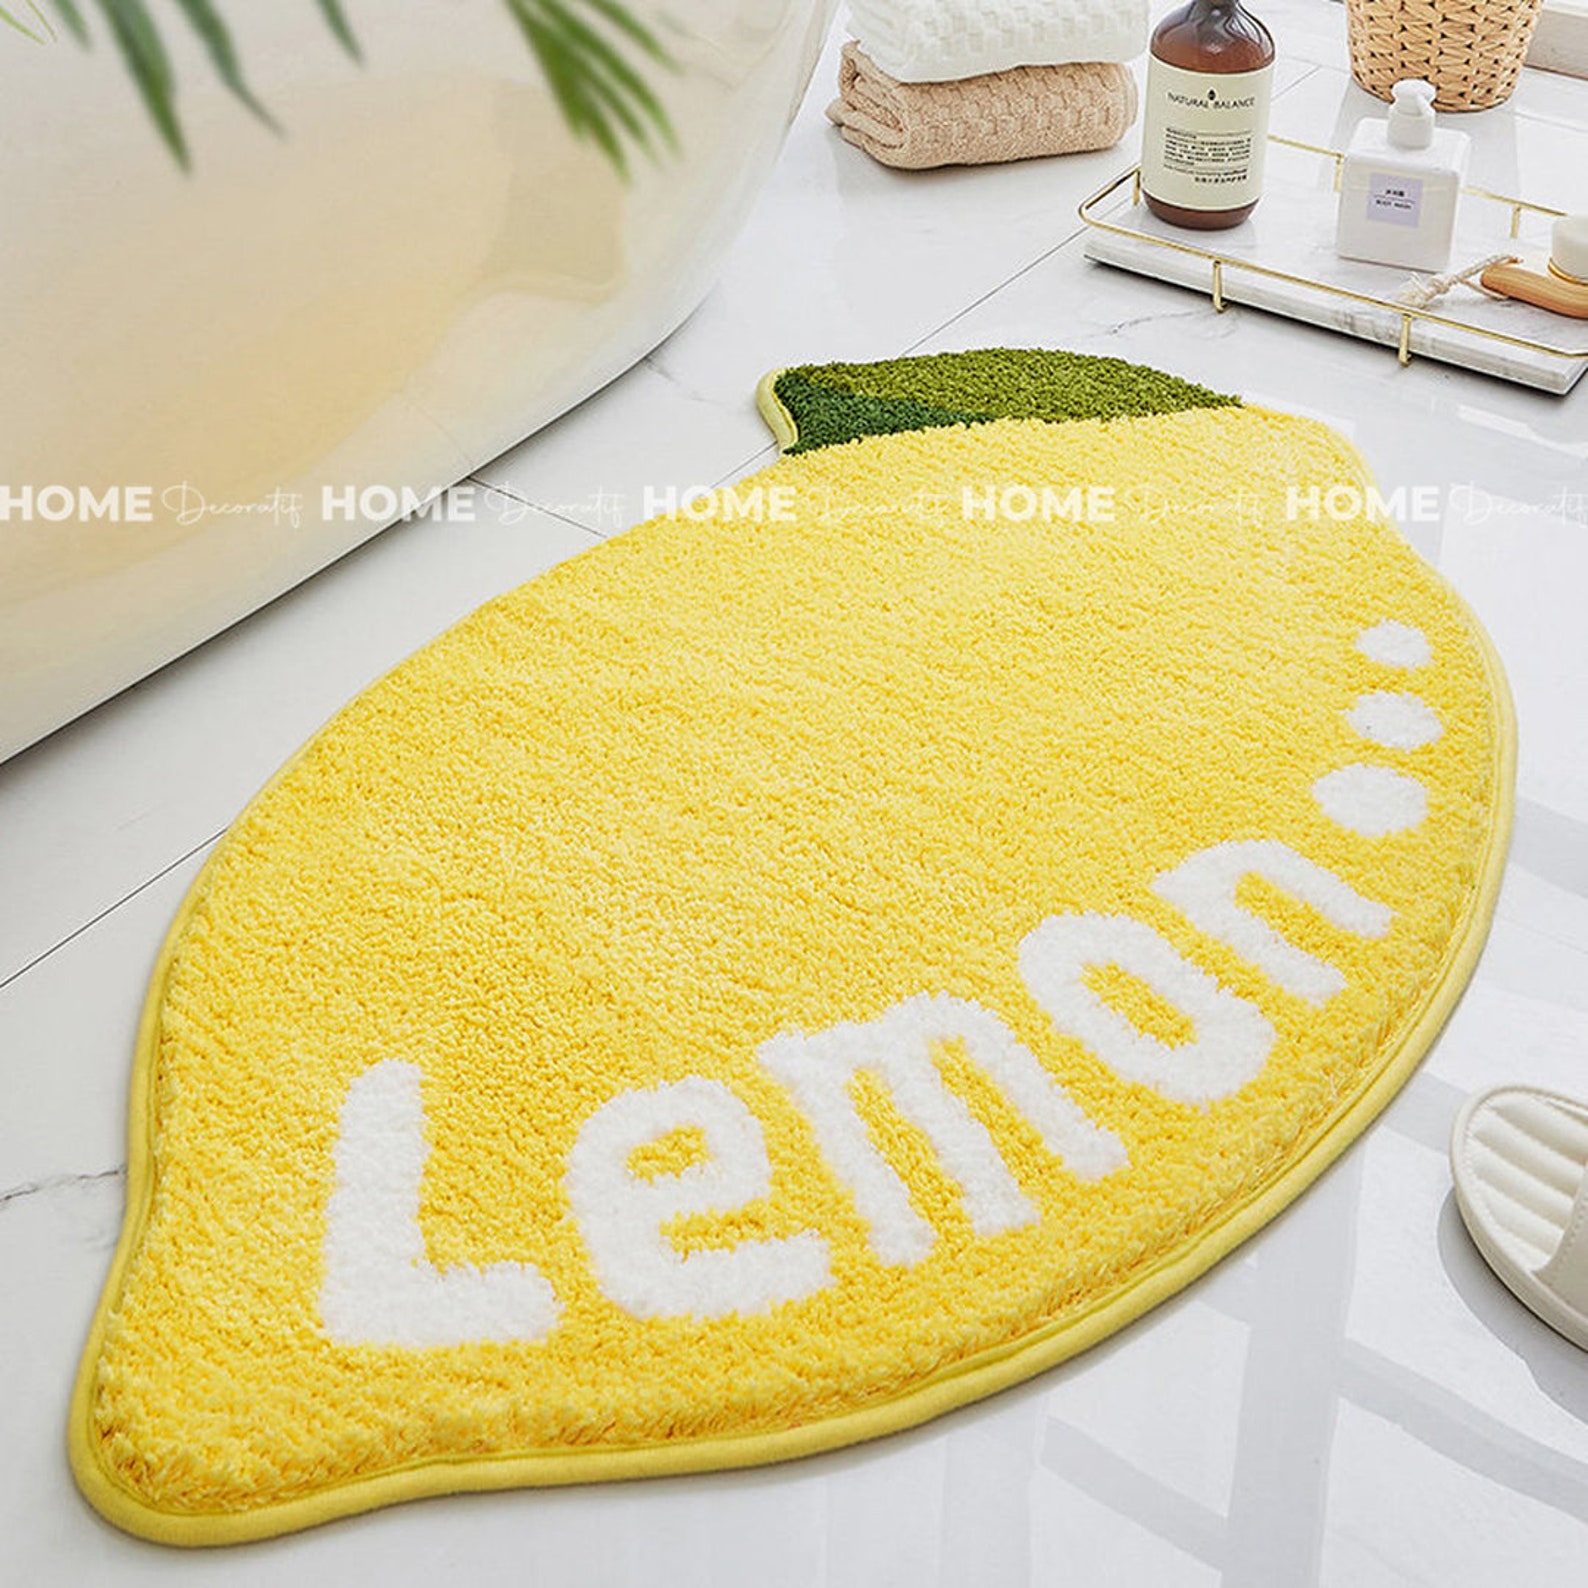 Lemon bath mat | Etsy